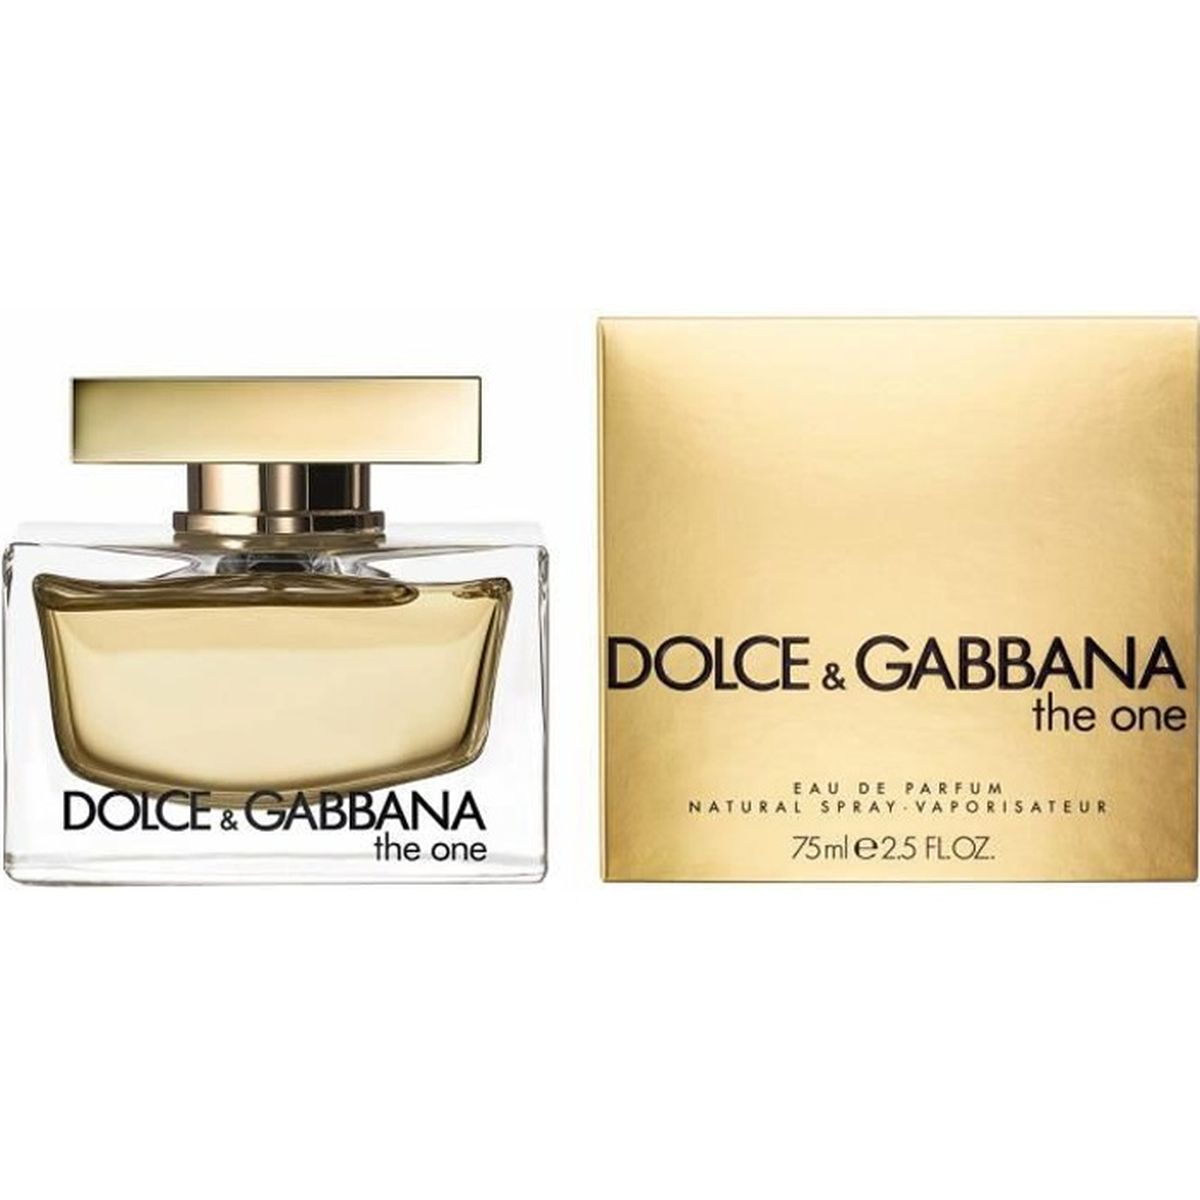 dolce & gabbana the one eau de parfum price